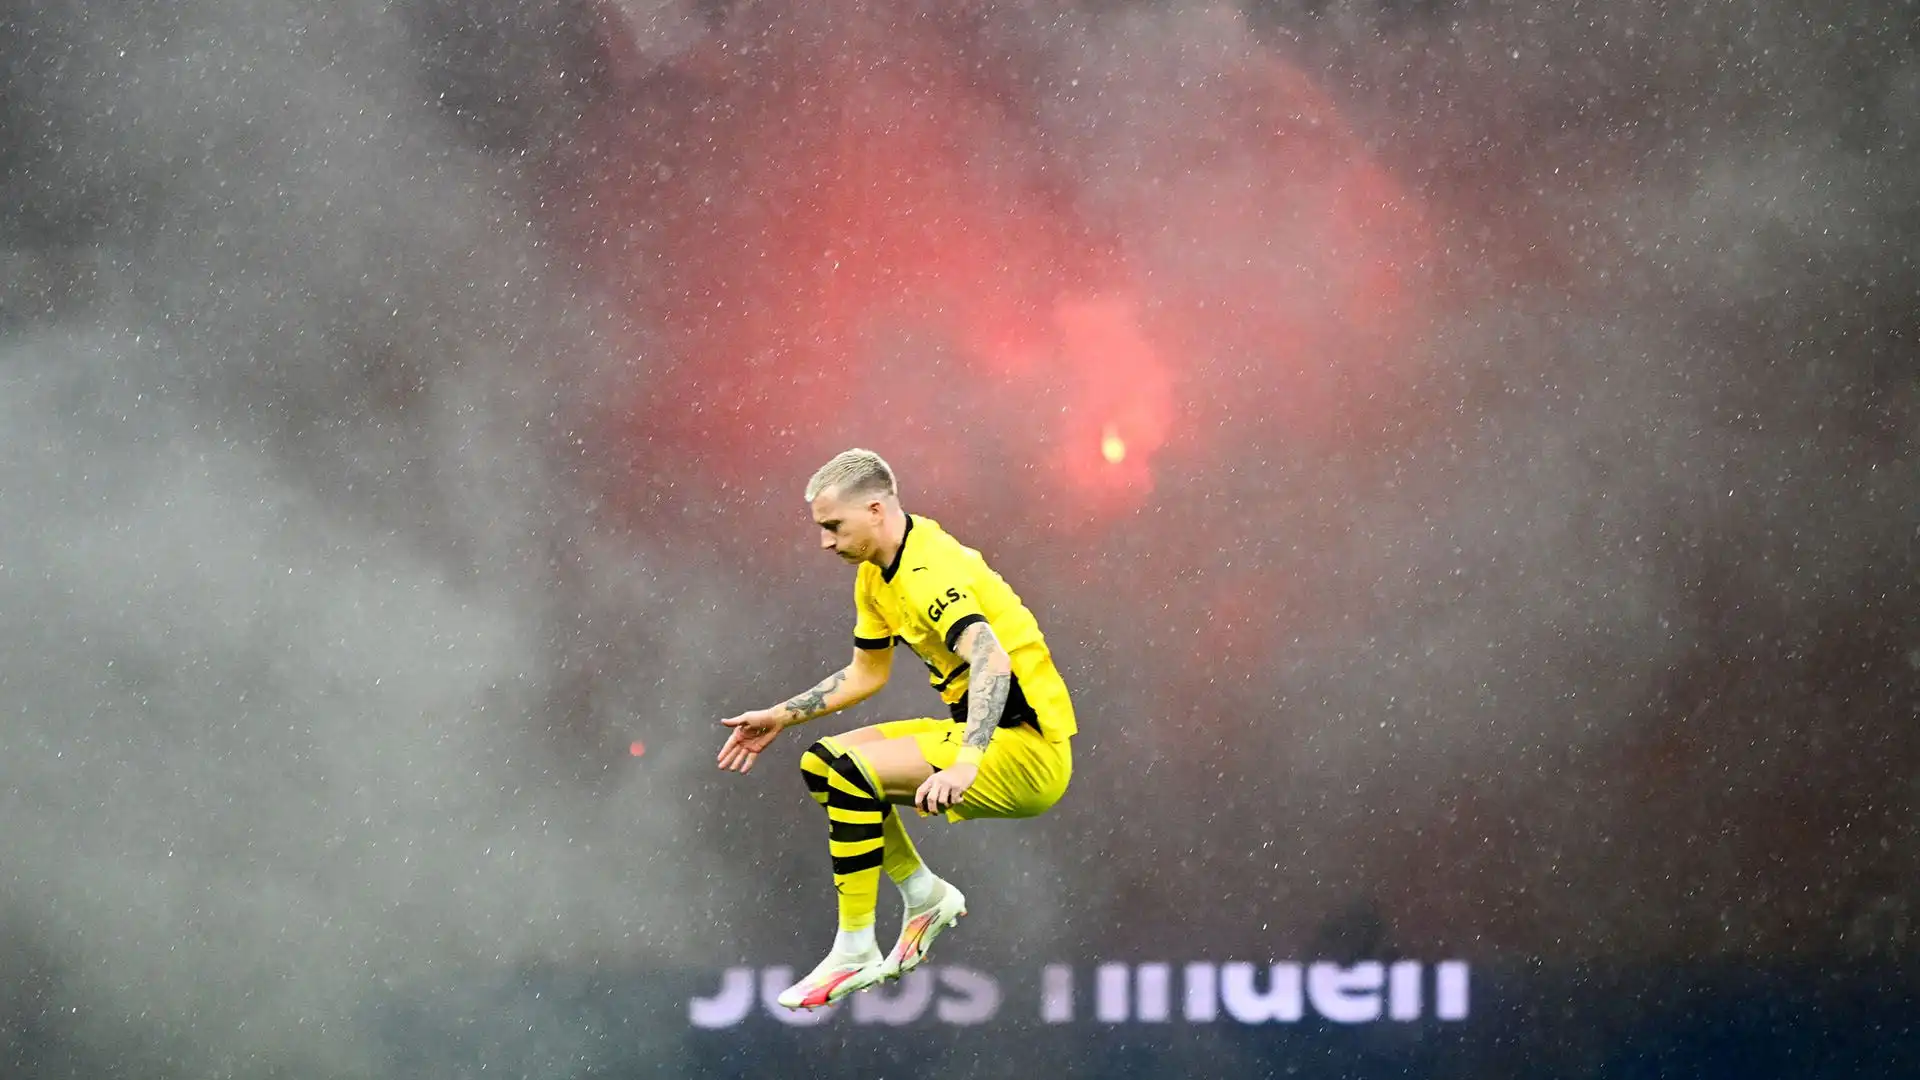 Sembrava dover chiudere la carriera al Borussia Dortmund